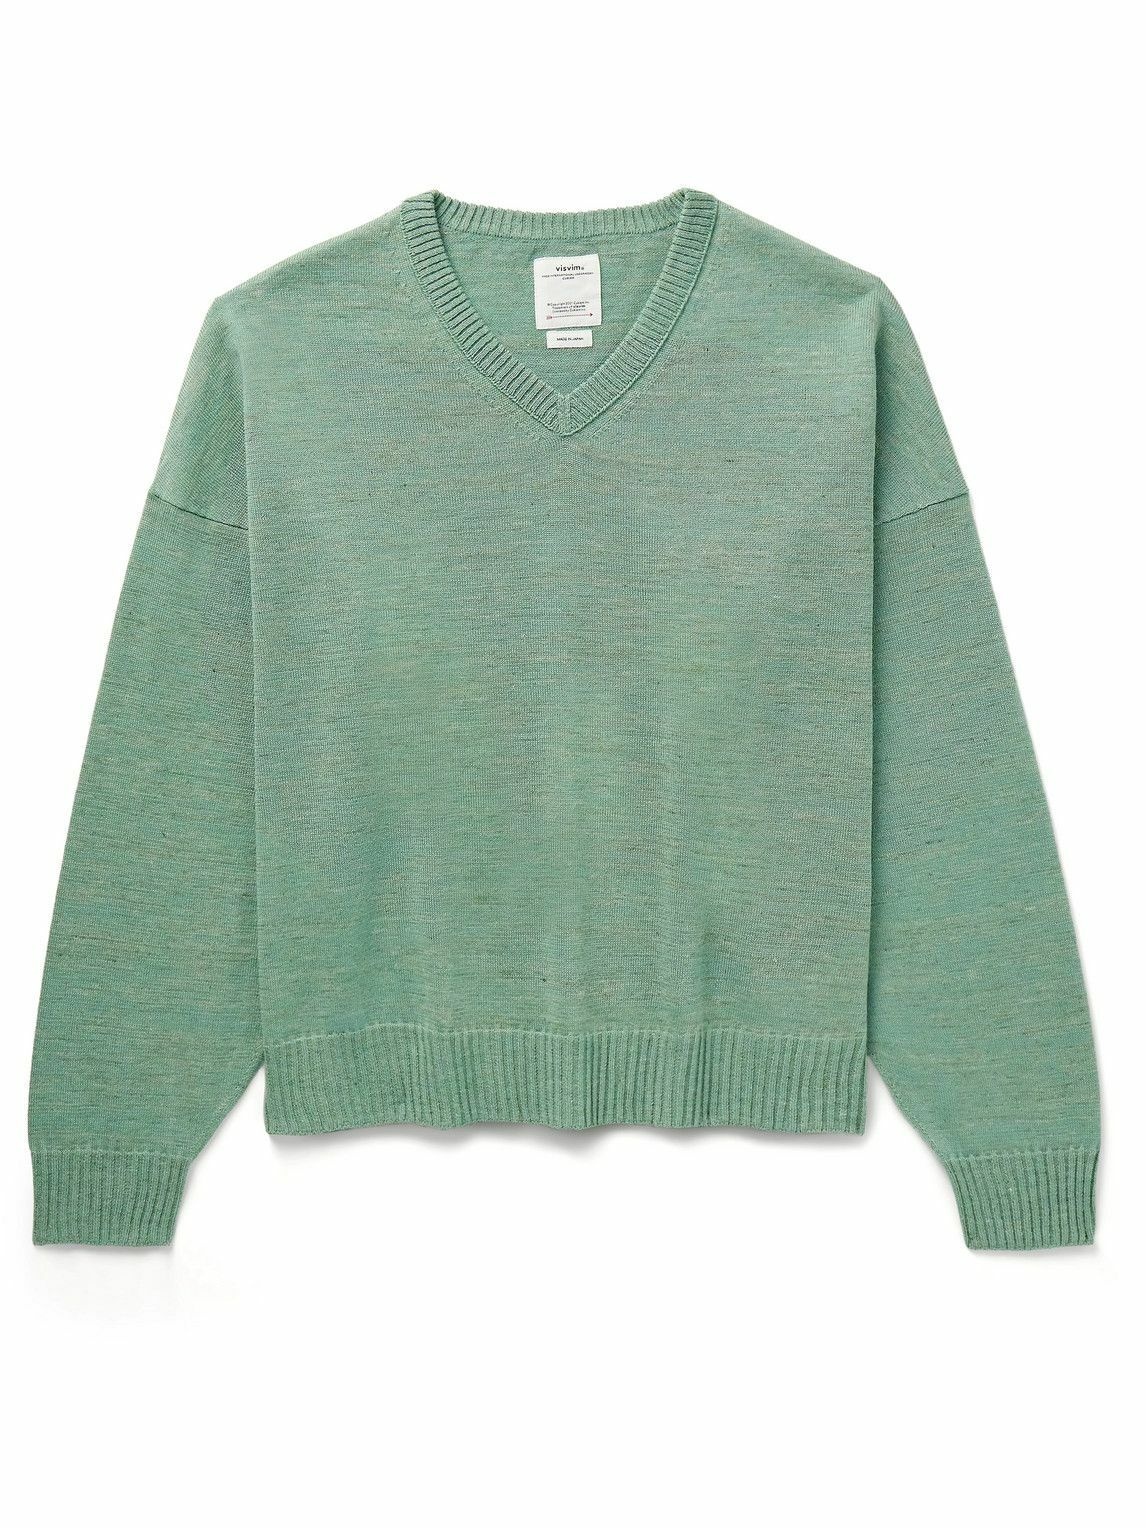 Photo: Visvim - Selmer Wool and Linen-Blend Sweater - Green